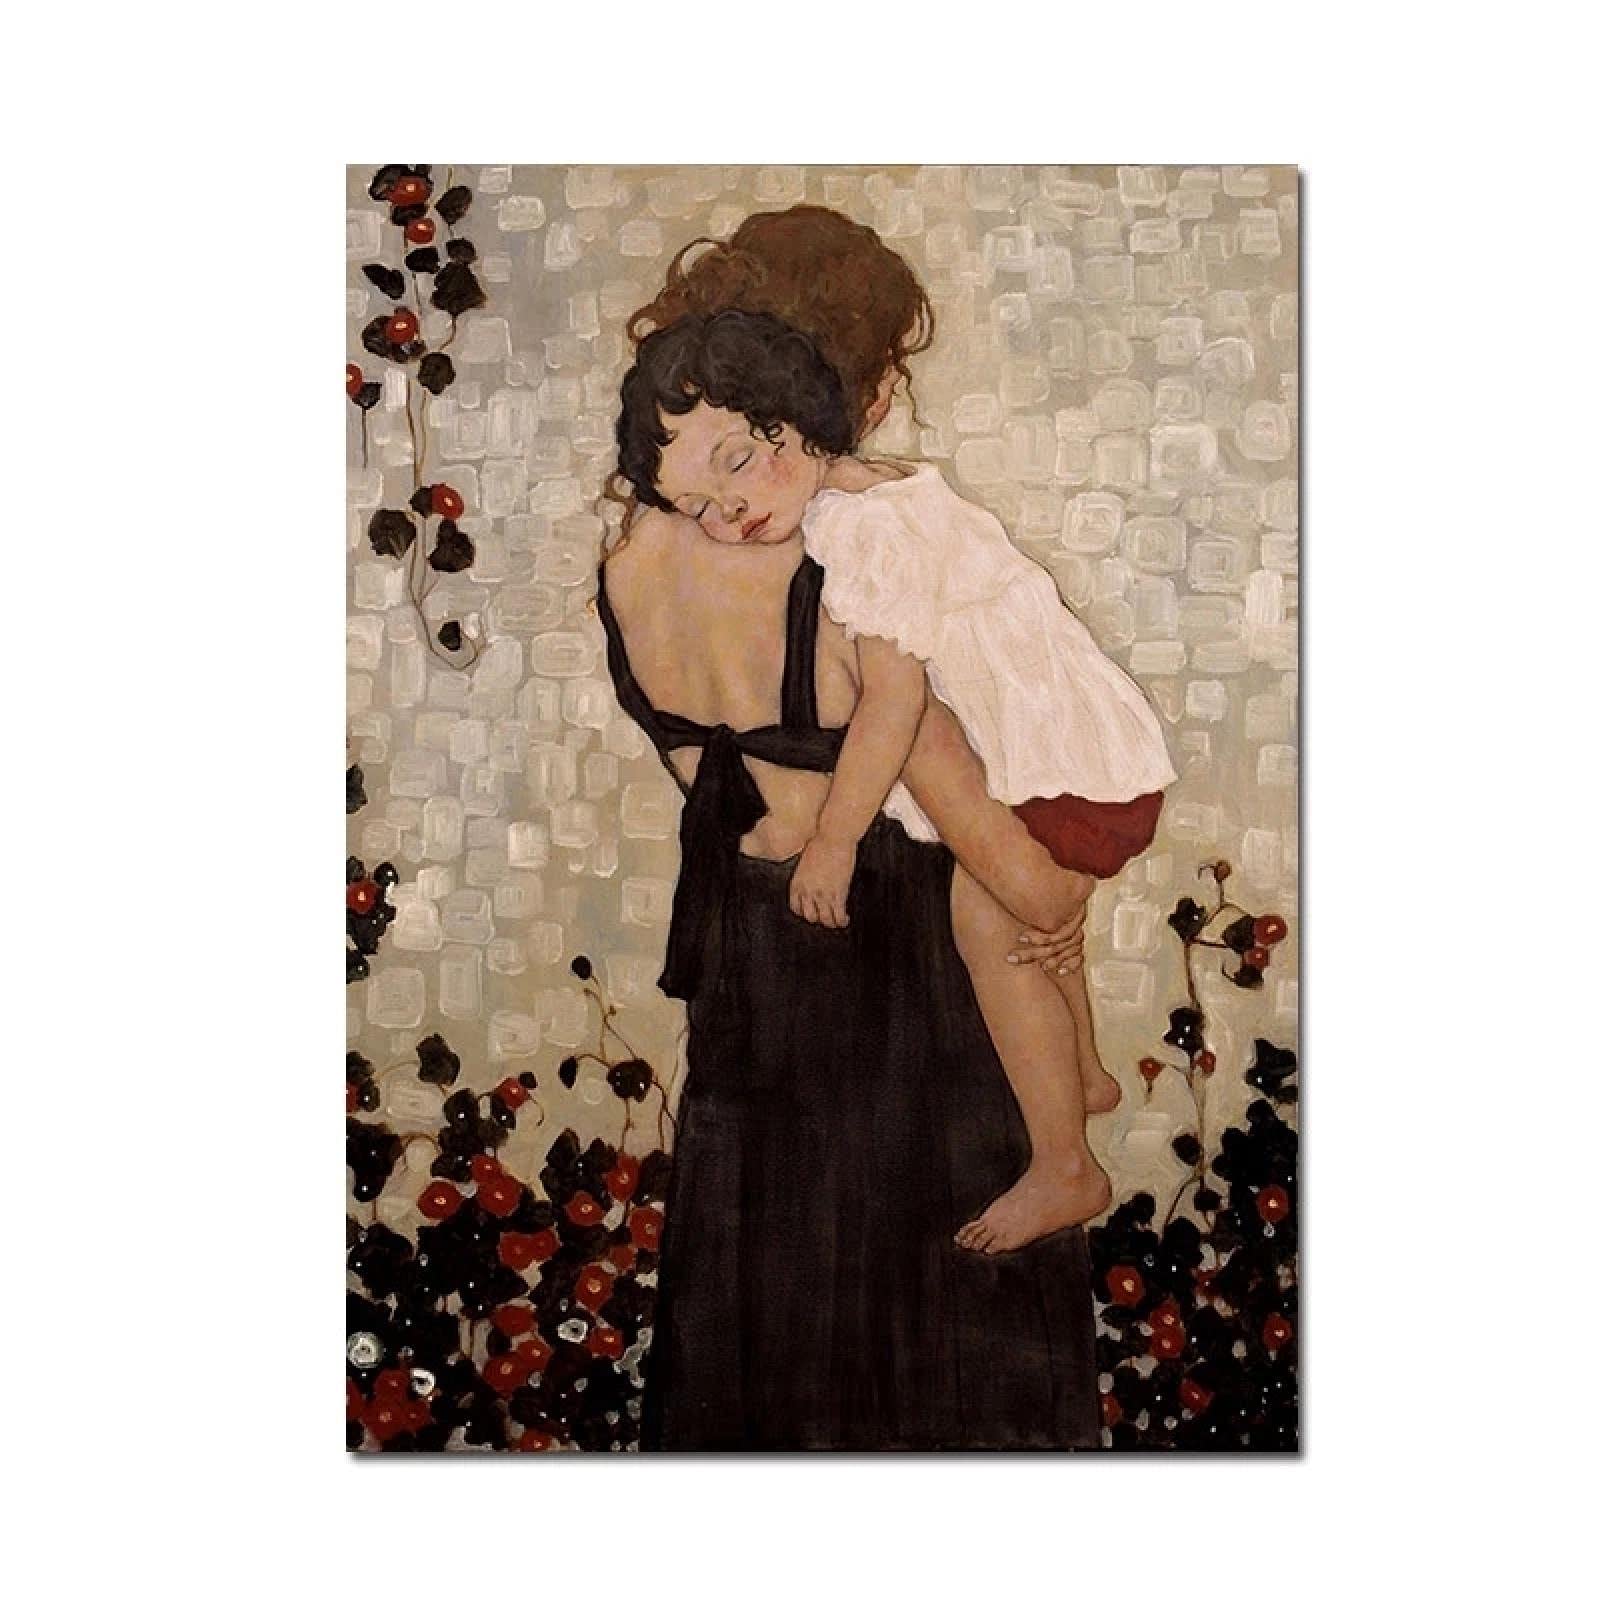 Berühmte Mutter und Sohn von Gustav Klimt Poster und Druck Wandkunst Bild Abstraktes Leinwandbild für Wohnzimmerdekoration 29,7 x 42 cm Rahmenlos